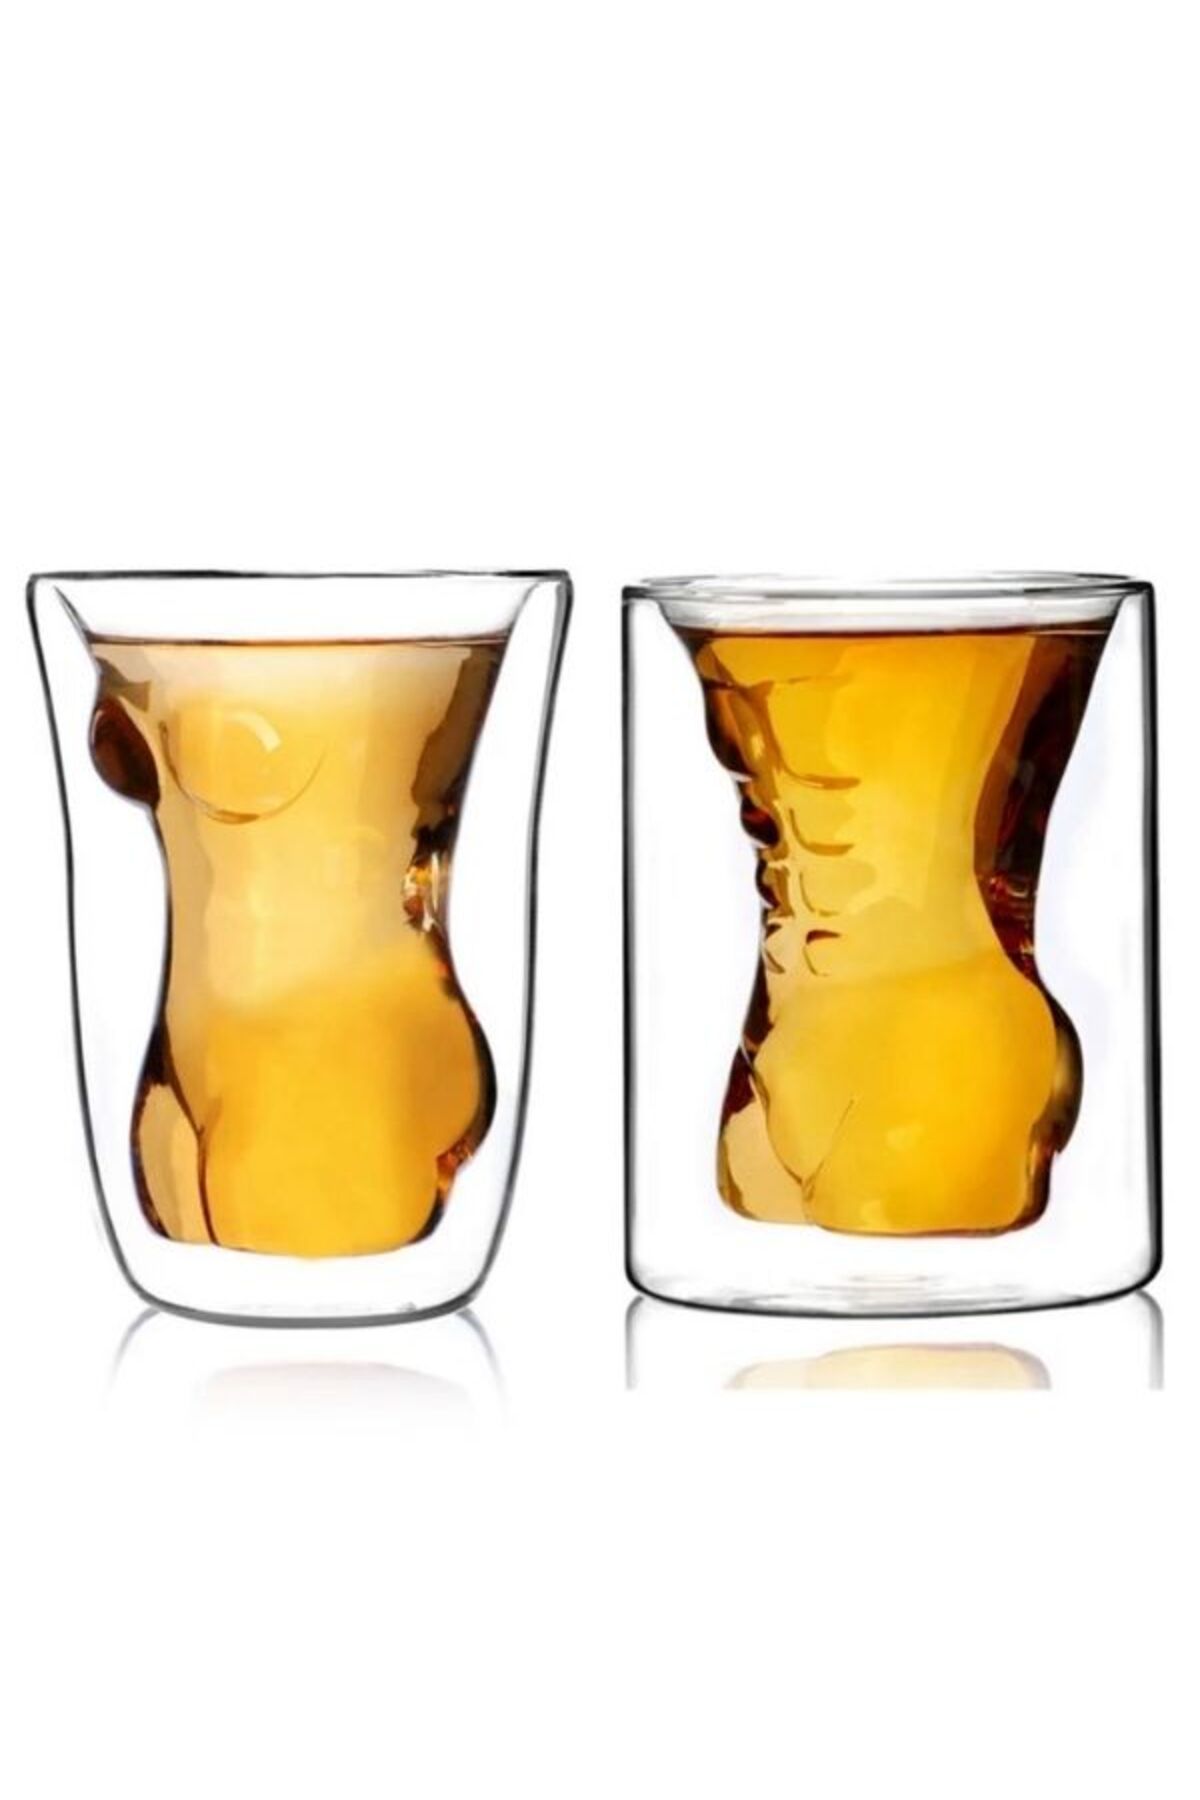 TUTYAKALA Erkek Ve Kadın Vücut Tasarımlı Viski Likör Votka Bardağı 2 Li Set - Beauty Cup